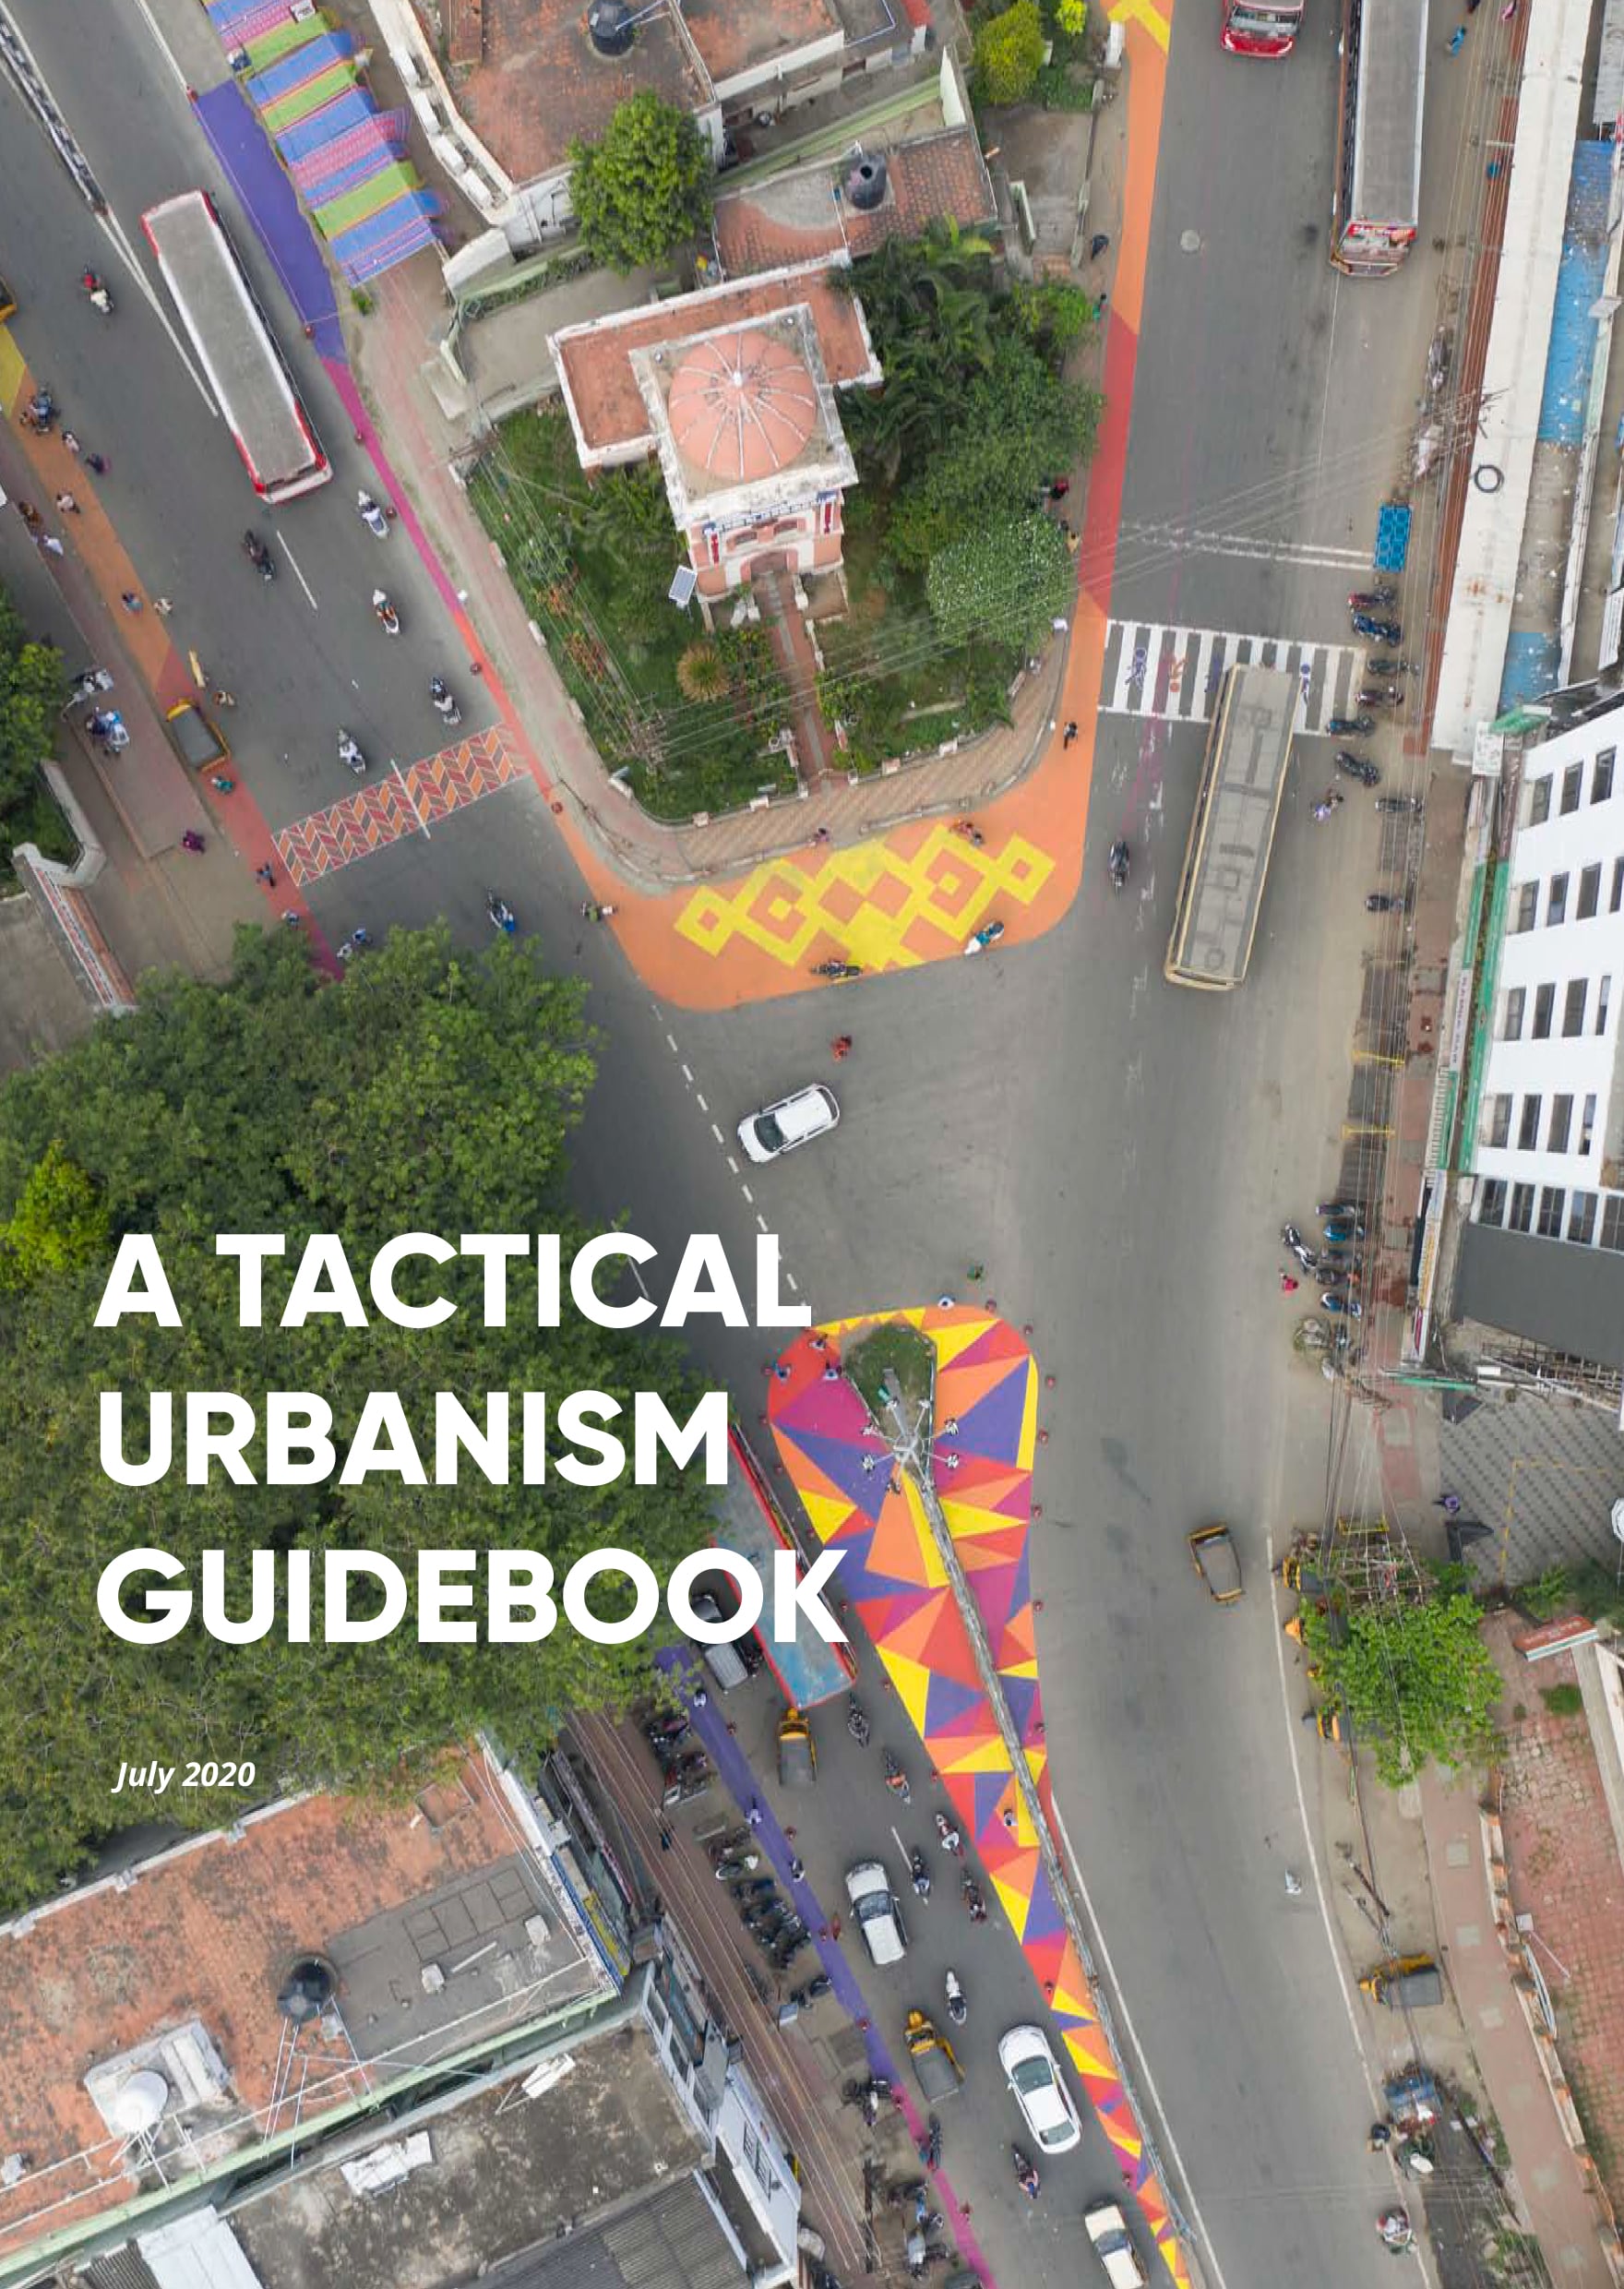 A Tactical Urbanism Guidebook